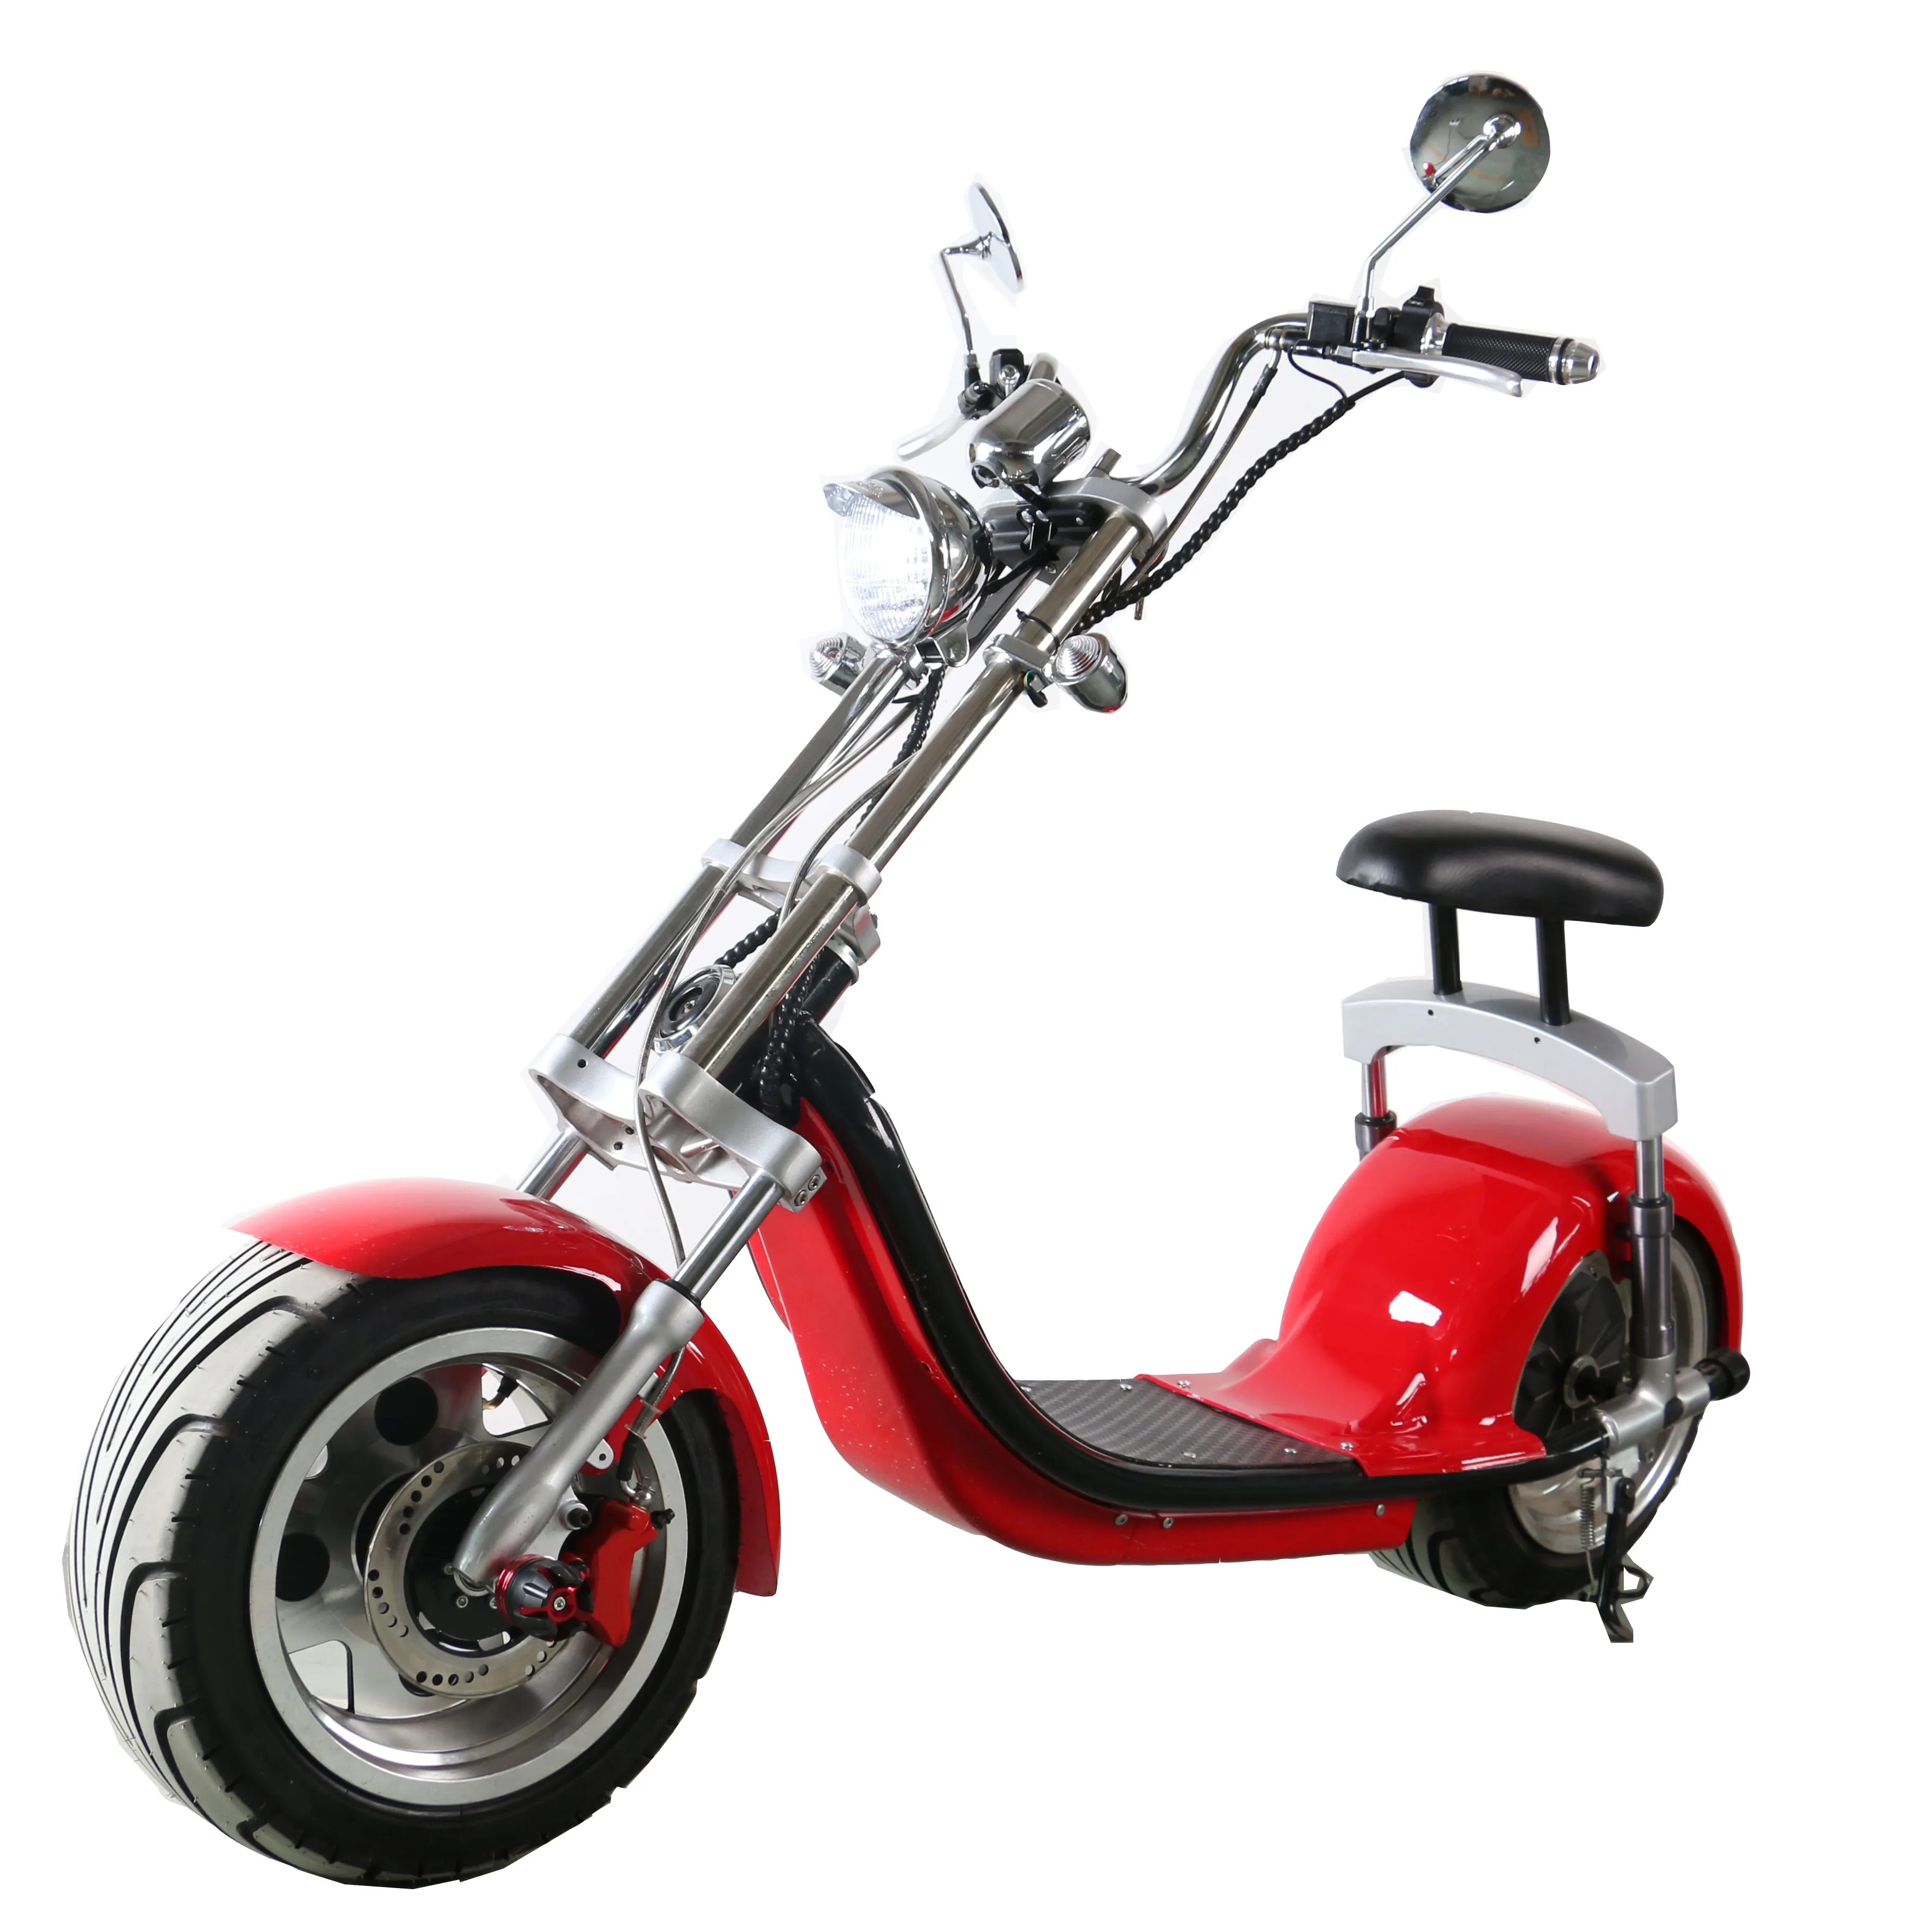 Прямая продажа с китайской фабрики, Электрический скутер citycoco 250 куб. См, автоматический электрический мотоцикл для взрослых, оптовая продажа